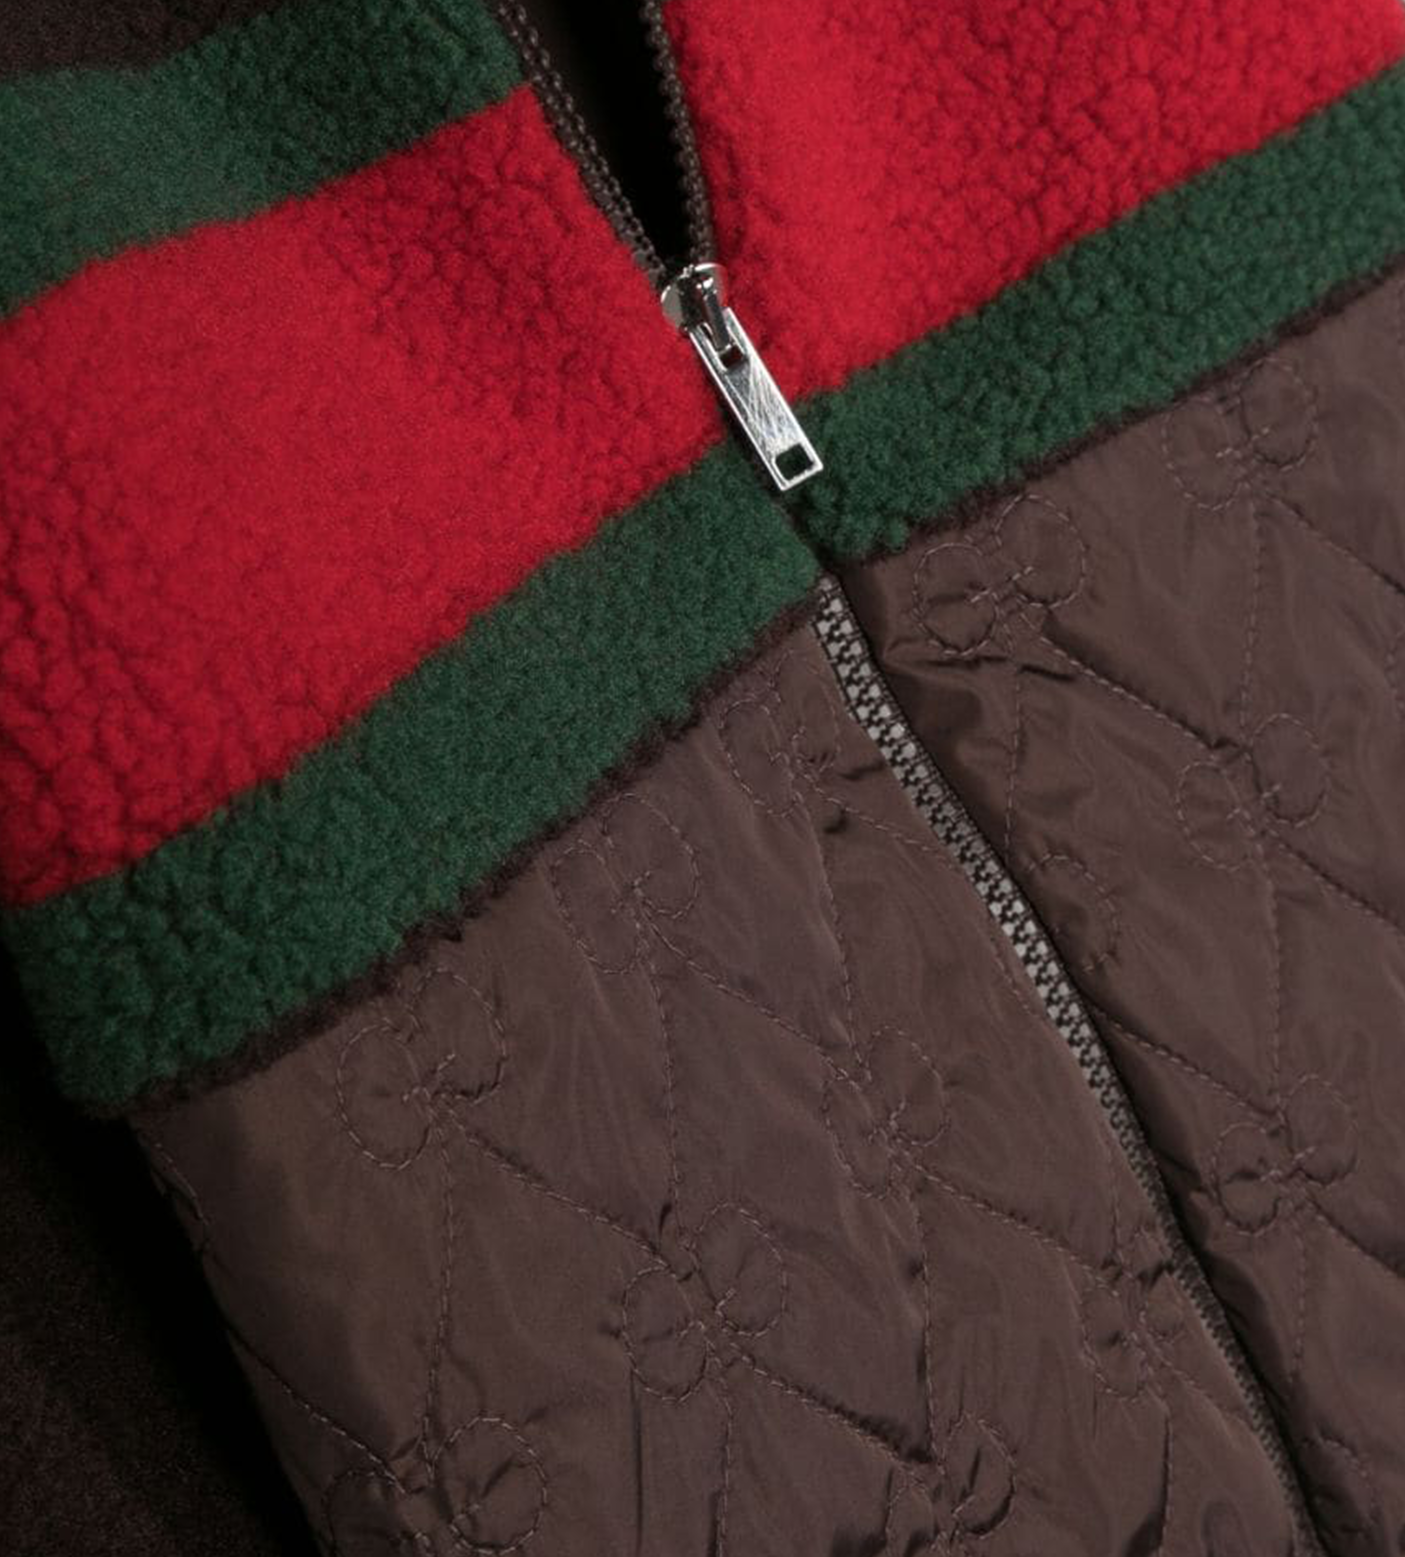 GG fabric zip jacket in dark brown